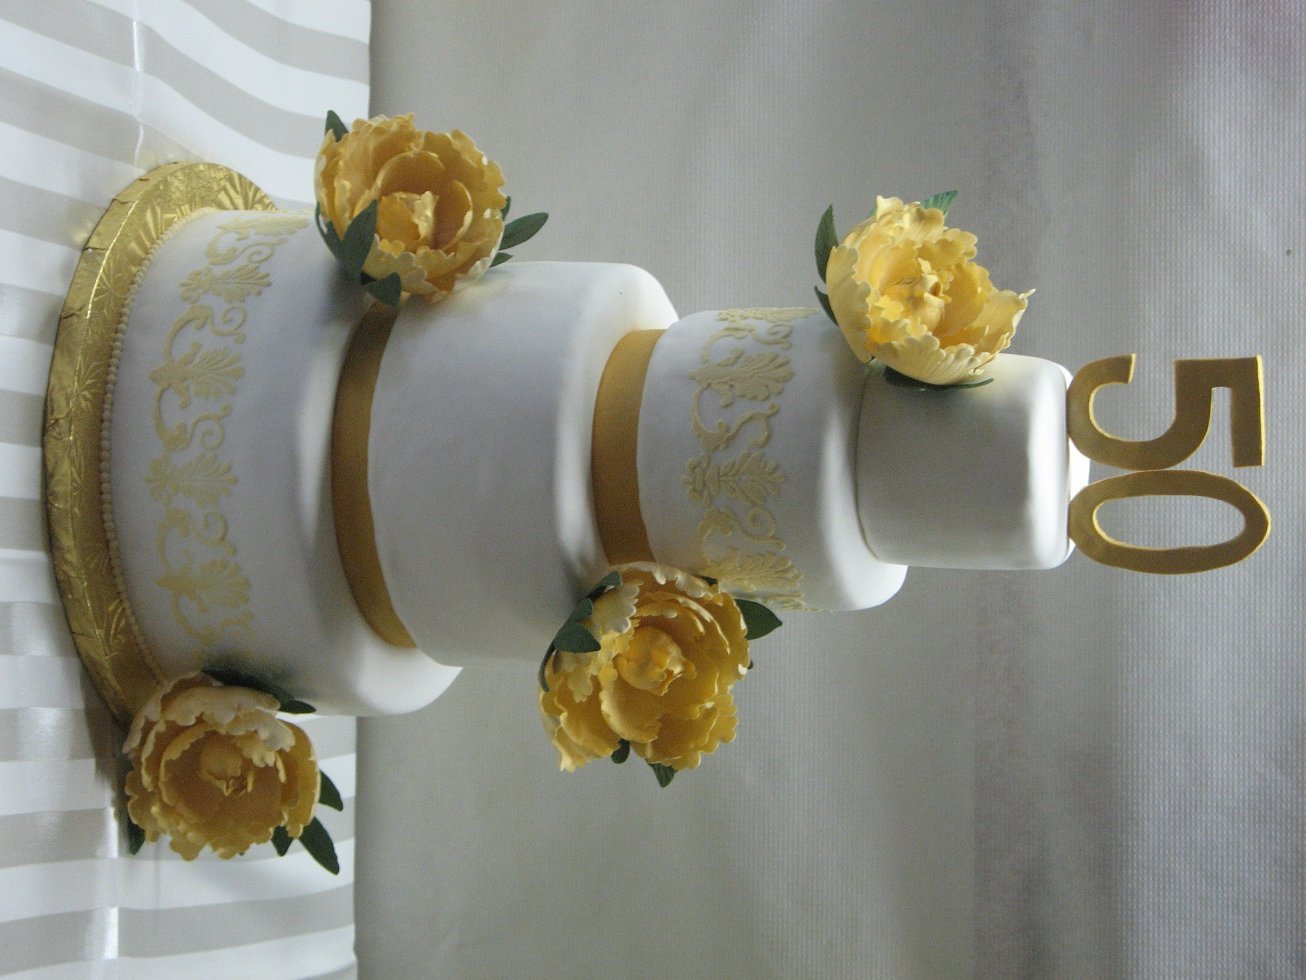 Золотая свадьба купить. Торт на золотую свадьбу. Украшение торта на золотую свадьбу. Торт на 50 лет свадьбы. Золотая свадьба торт для родителей.